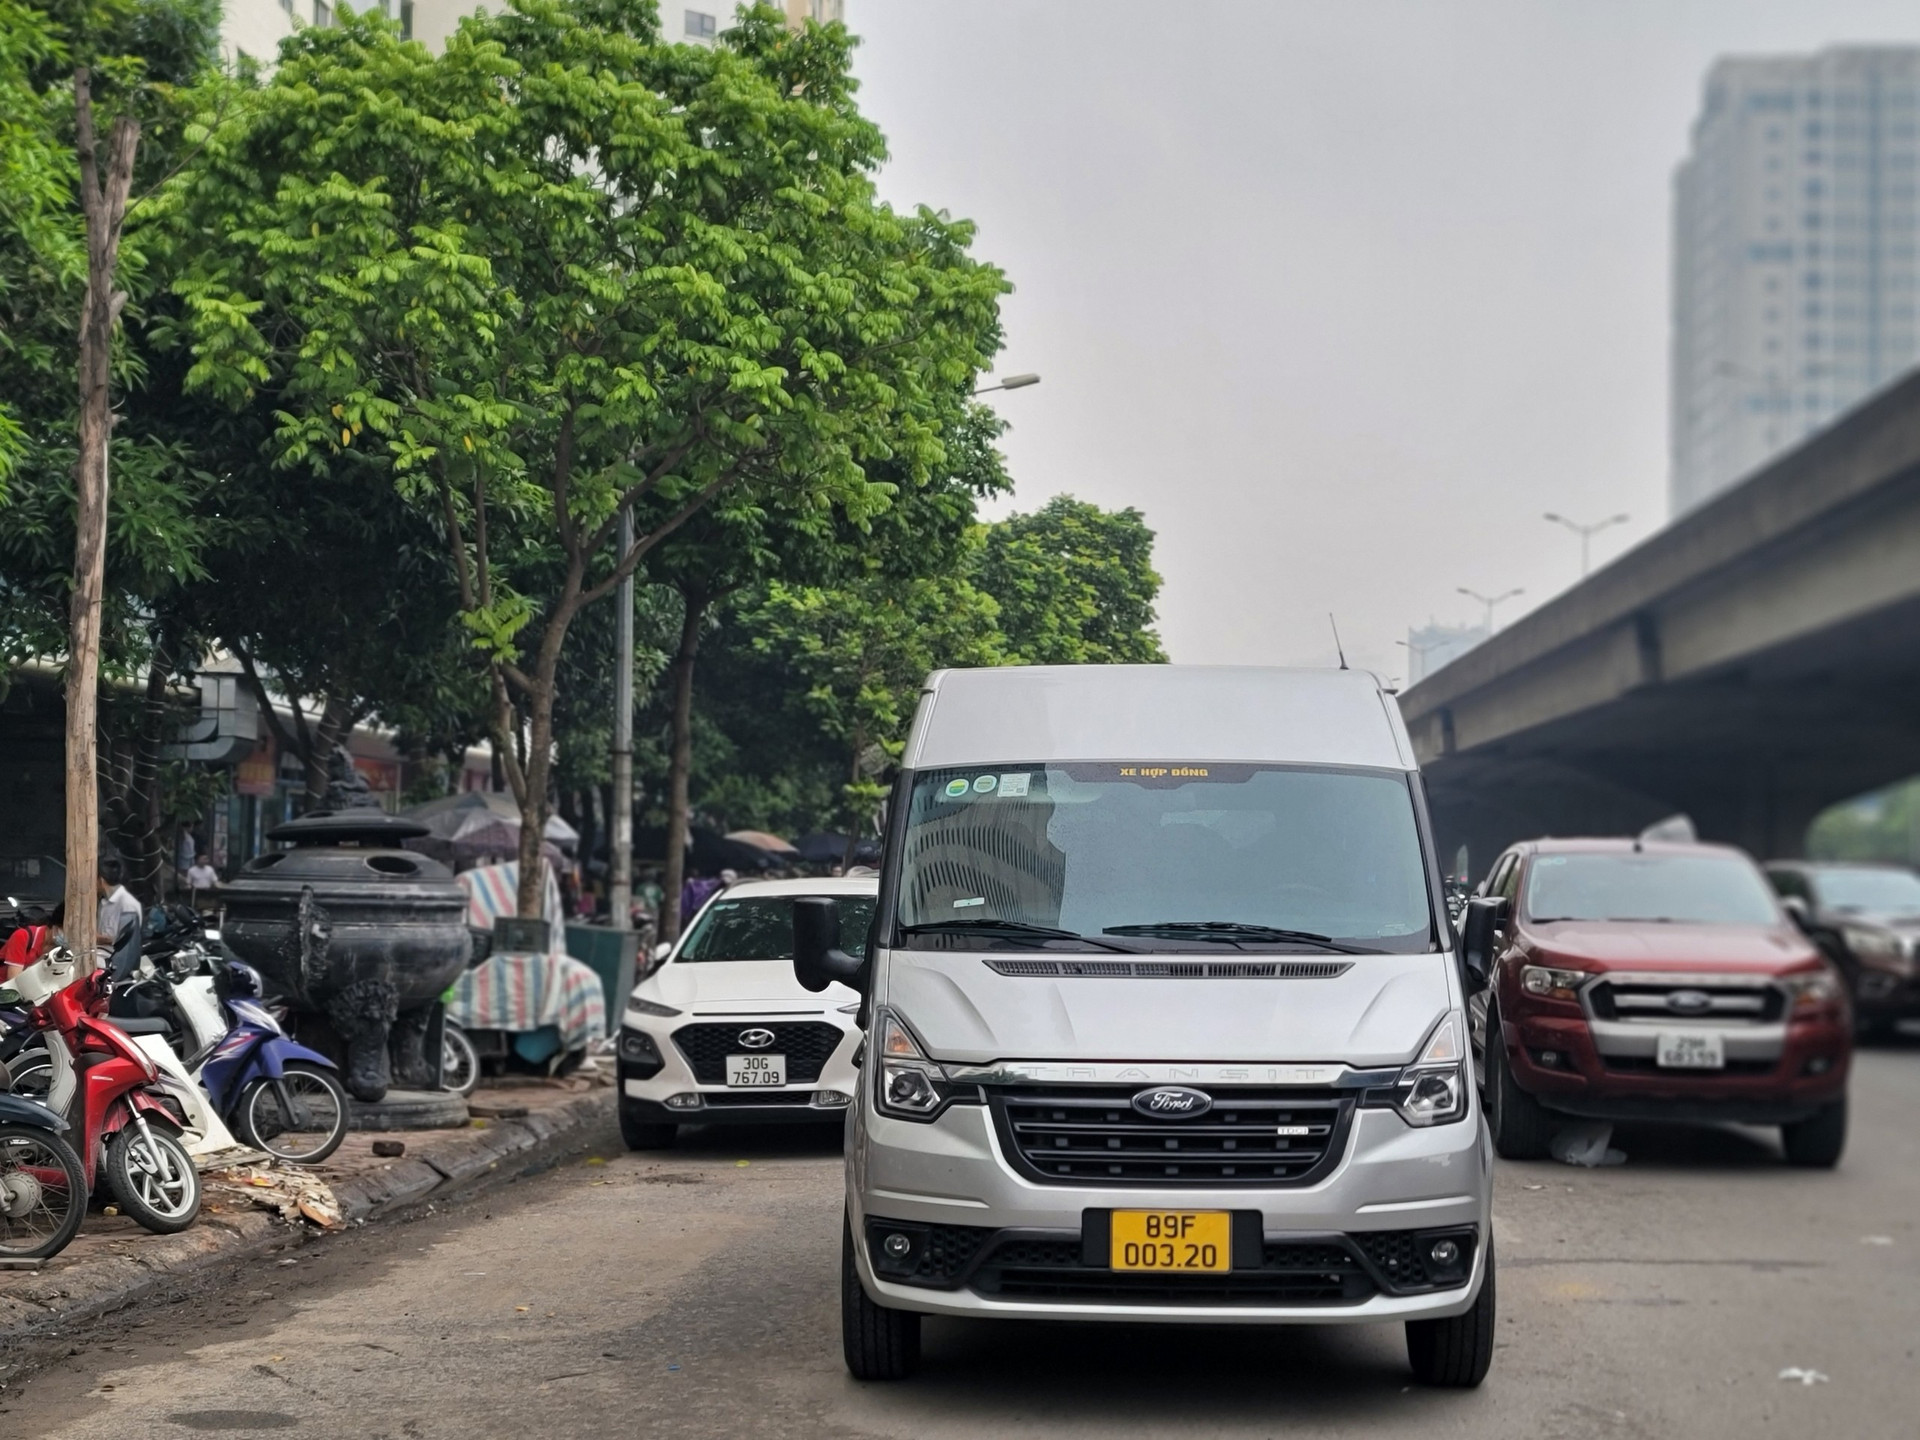 Ngoài ra, khu vực trước khu đô thị Kim Văn - Kim Lũ, ô tô thường xuyên dàn hàng 2, hàng 3 đậu dưới lòng đường, khiến cho tuyến phố trở nên nhếch nhác, lộn xộn và nhiều 